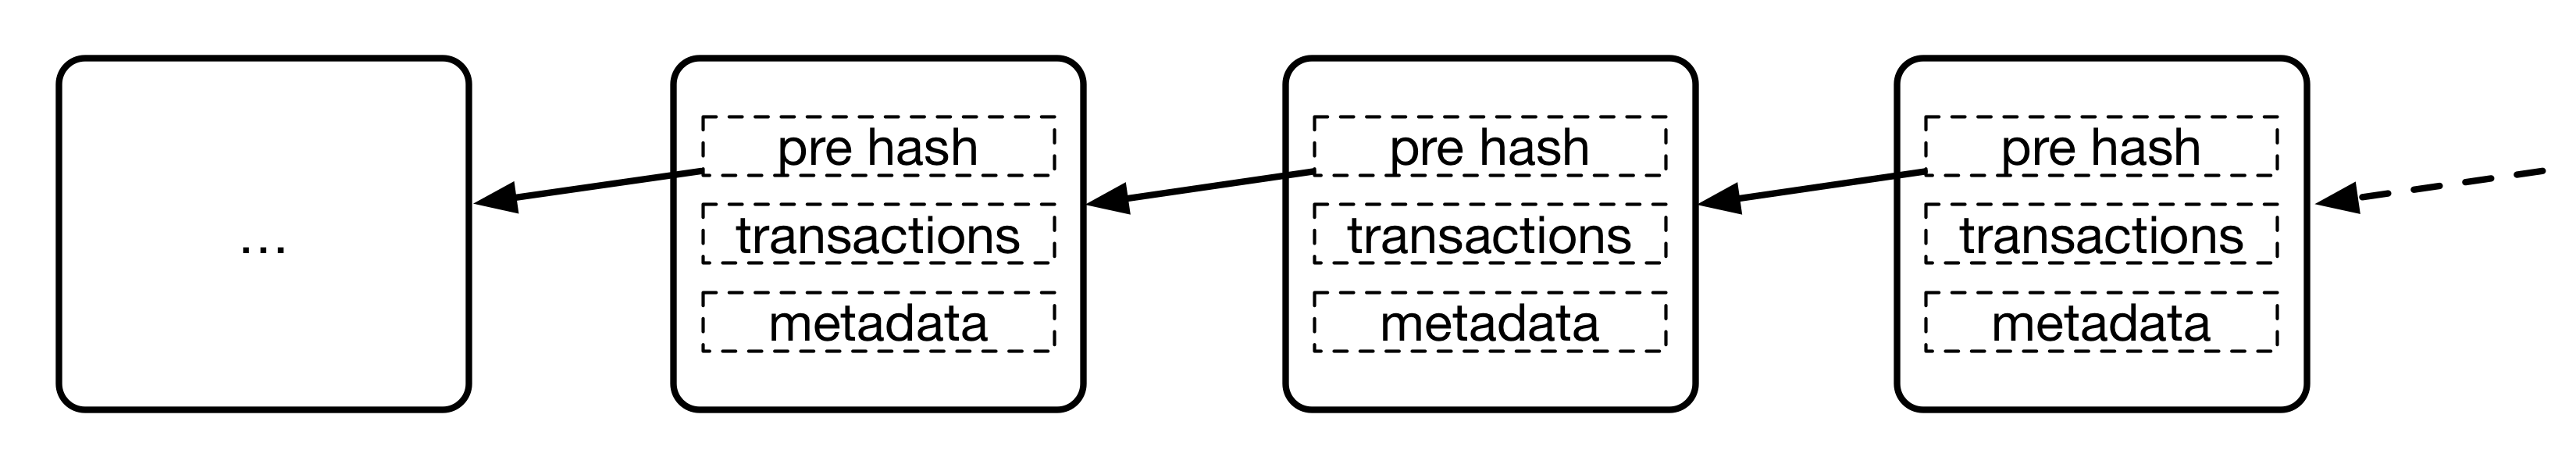 区块链结构示例